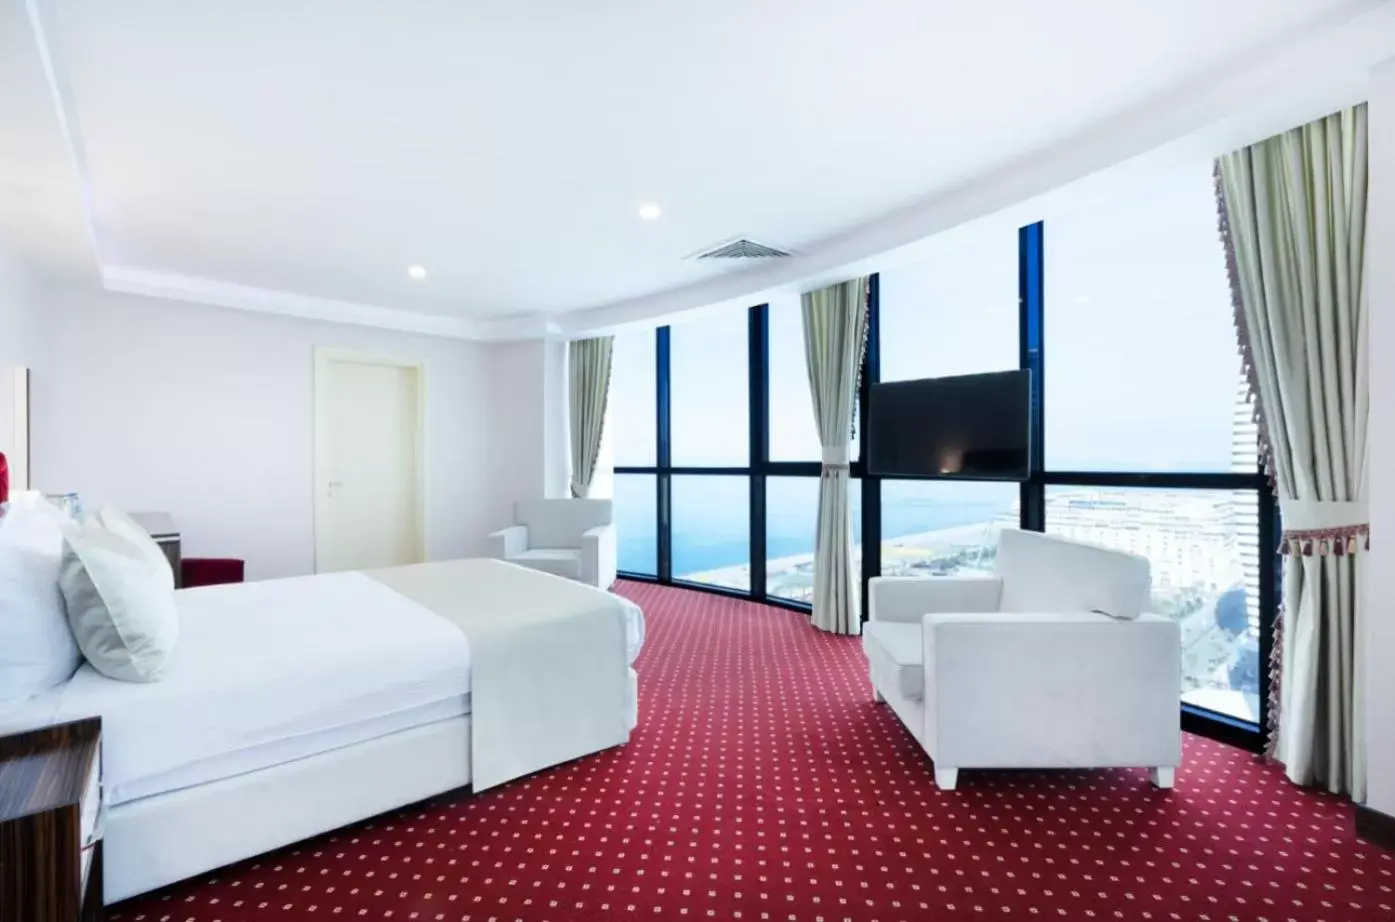 Bedroom in Sky Tower Hotel